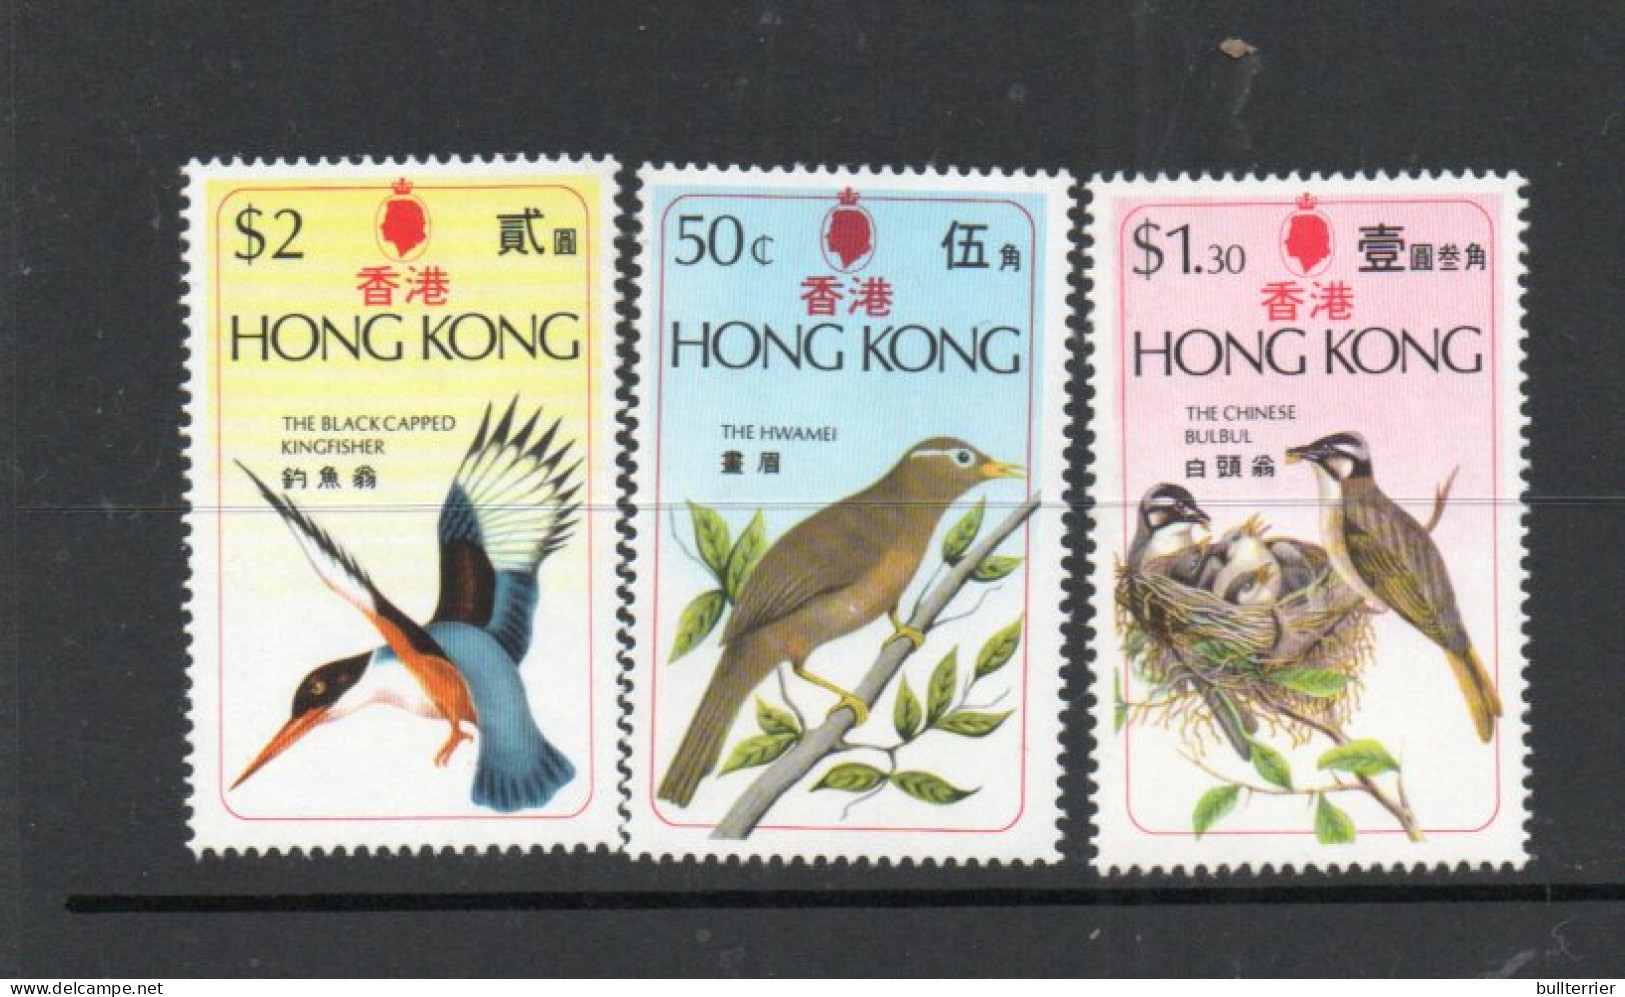 BIRDS - HONG KONG  - 1975- BIRDS SET OF 3  MINT NEVER HINGED, SG CAT £17 - Hoendervogels & Fazanten